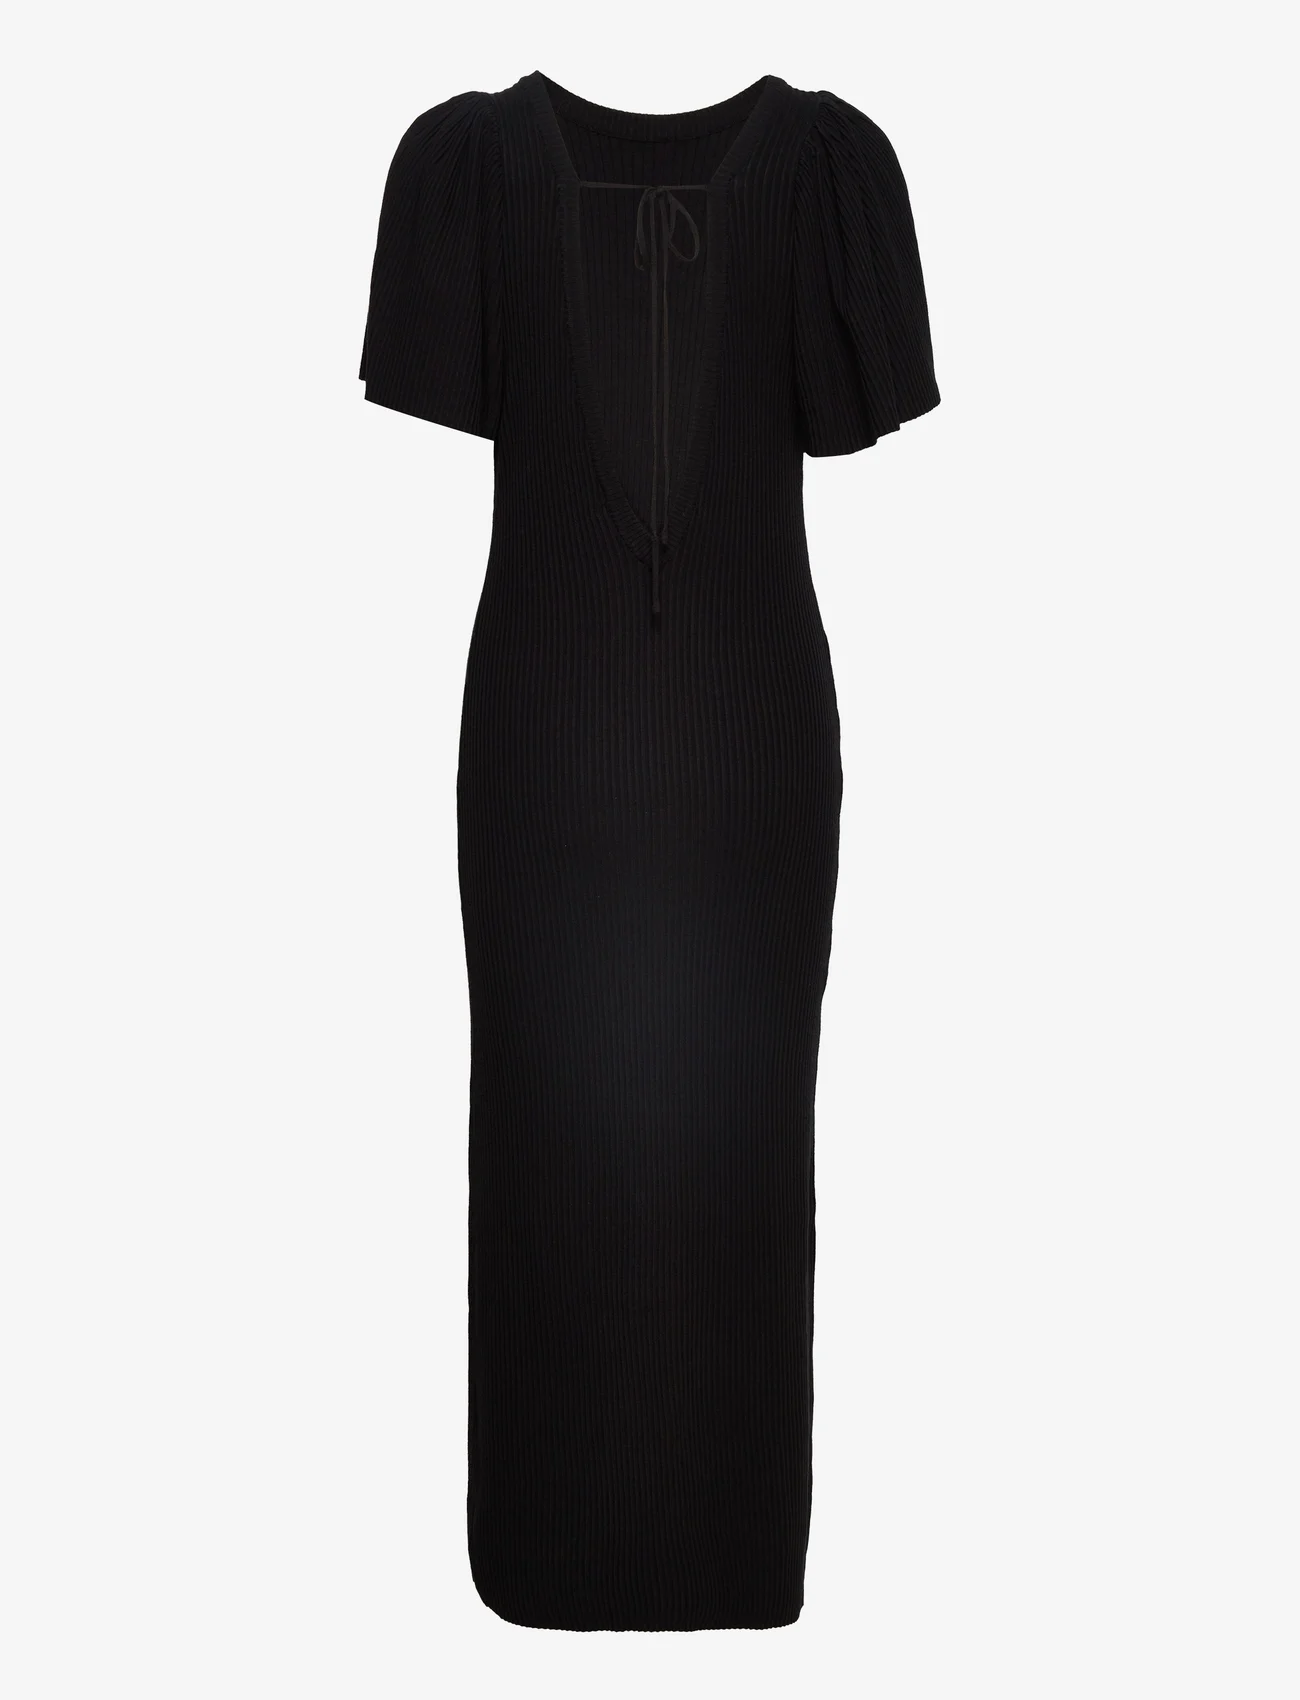 Munthe - VALLEN - tettsittende kjoler - black - 1